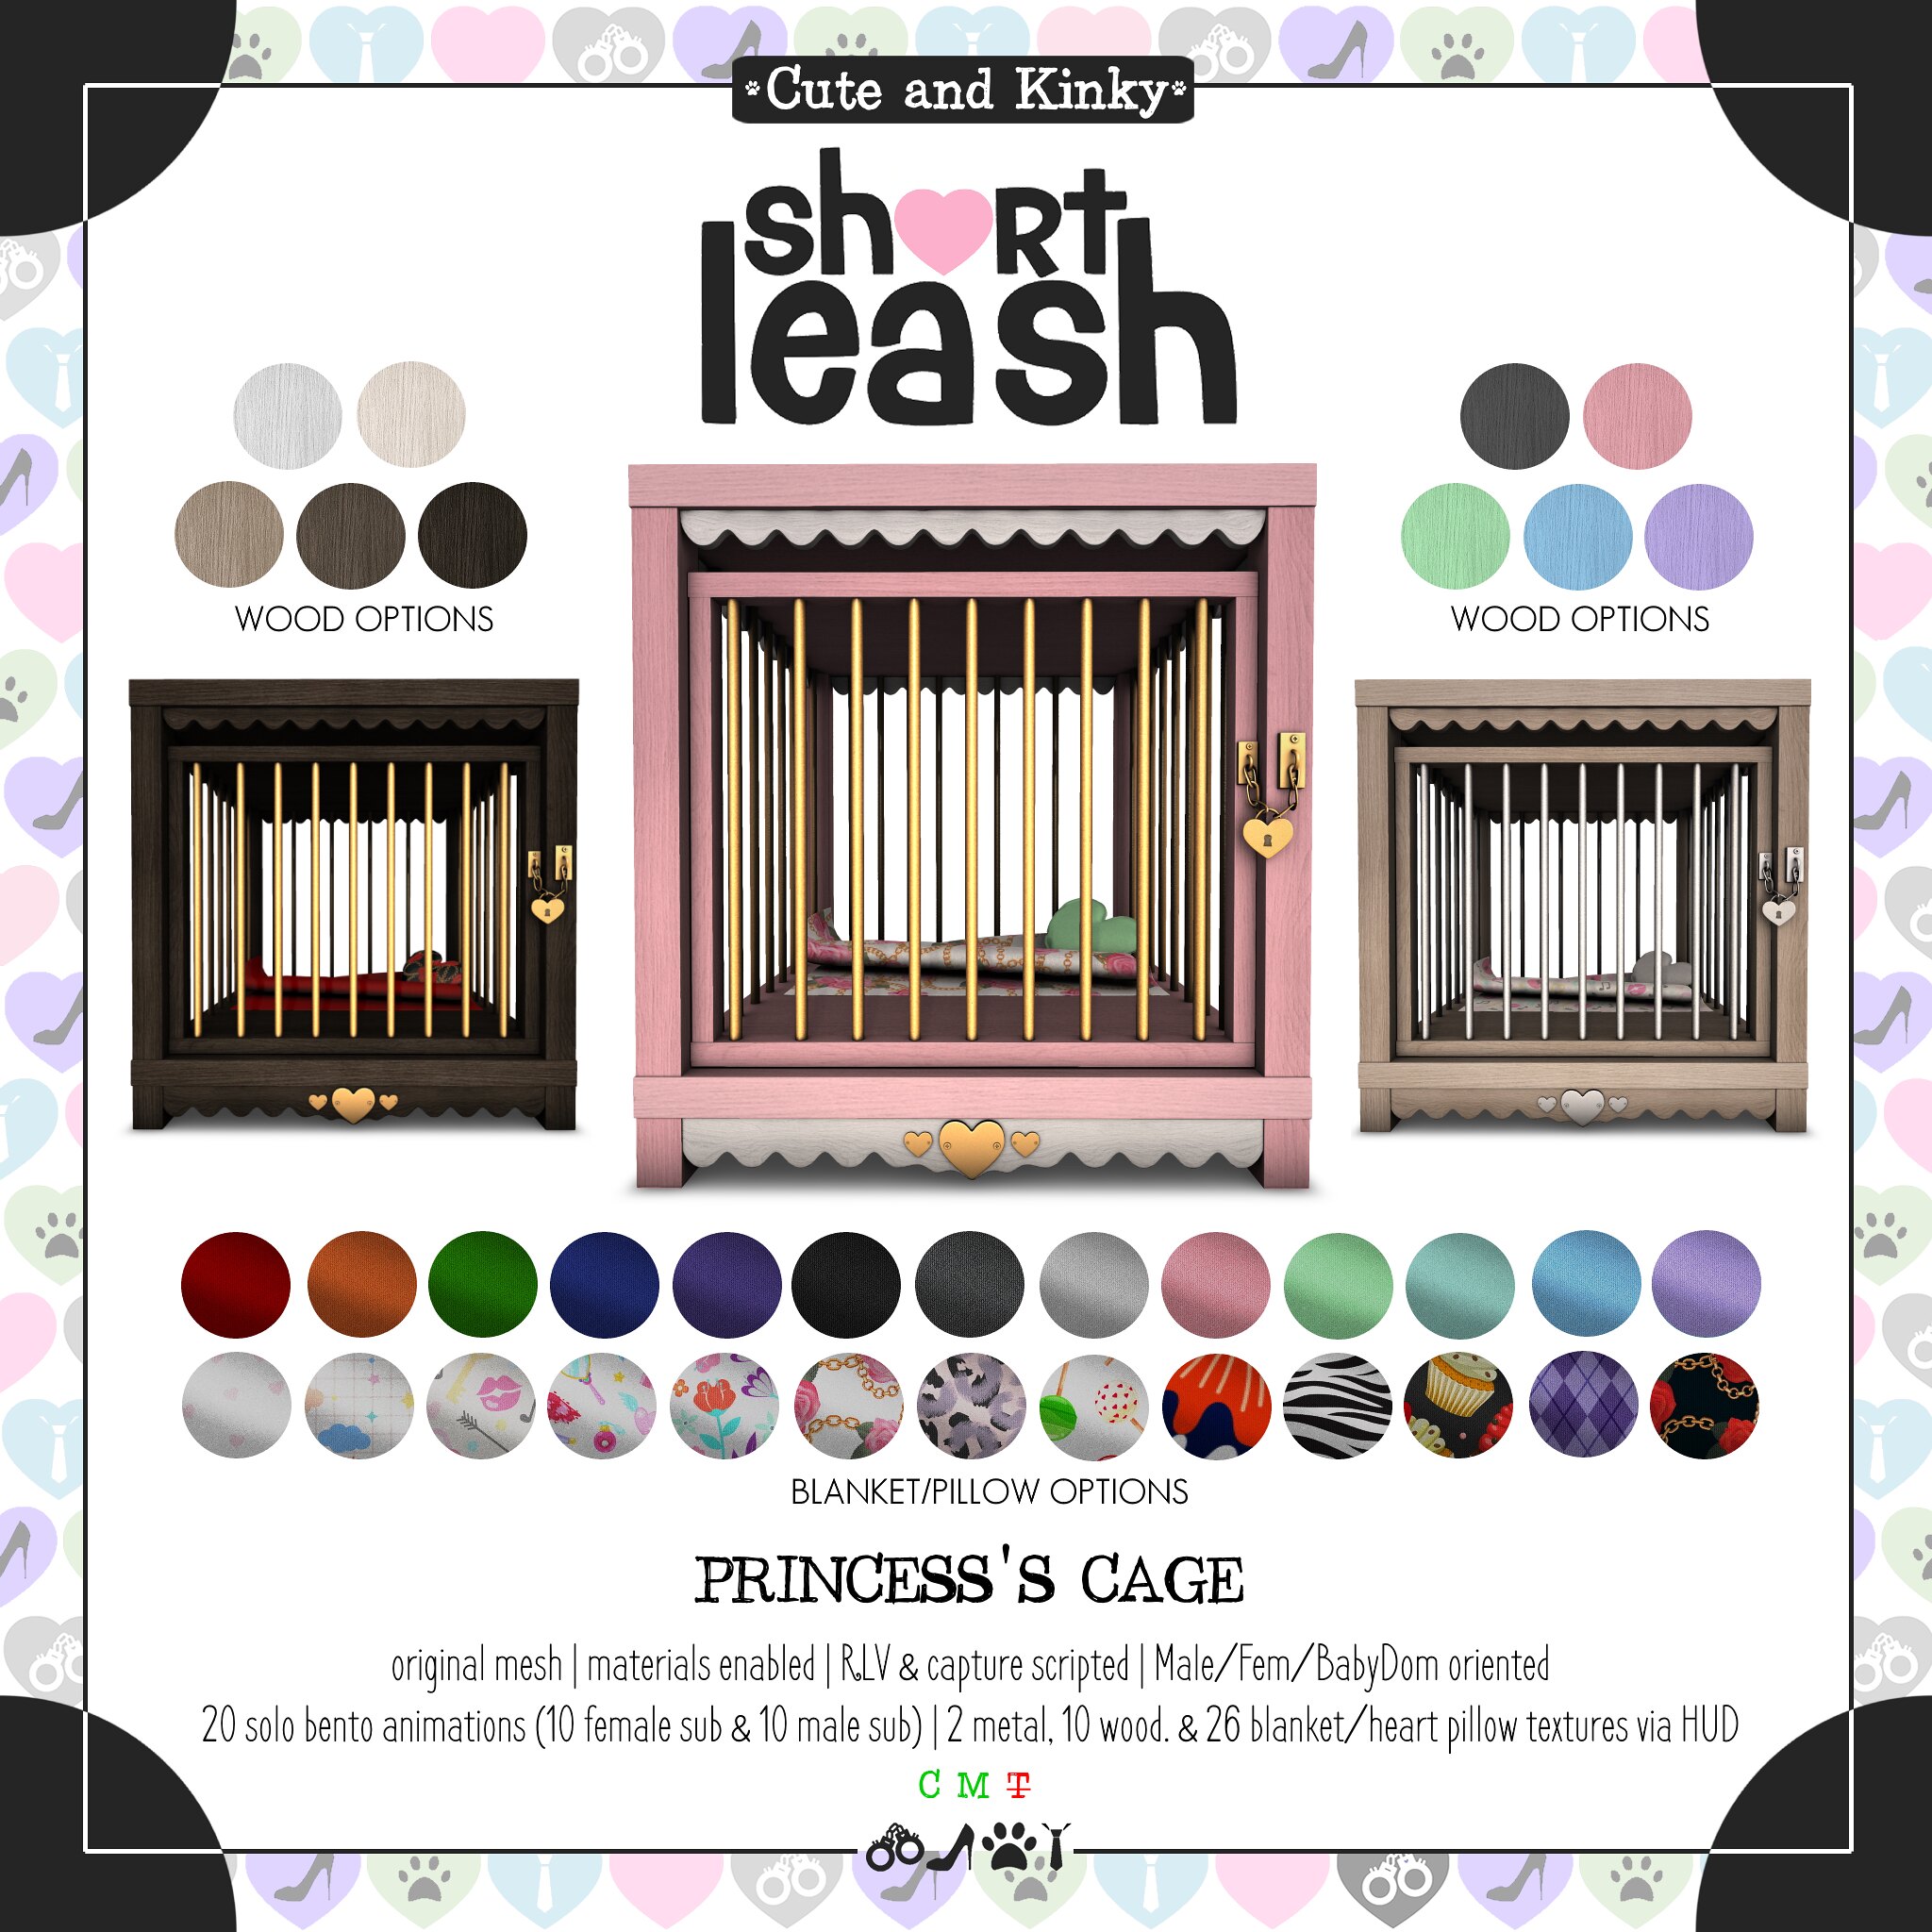 Short Leash – Princess’s Cage